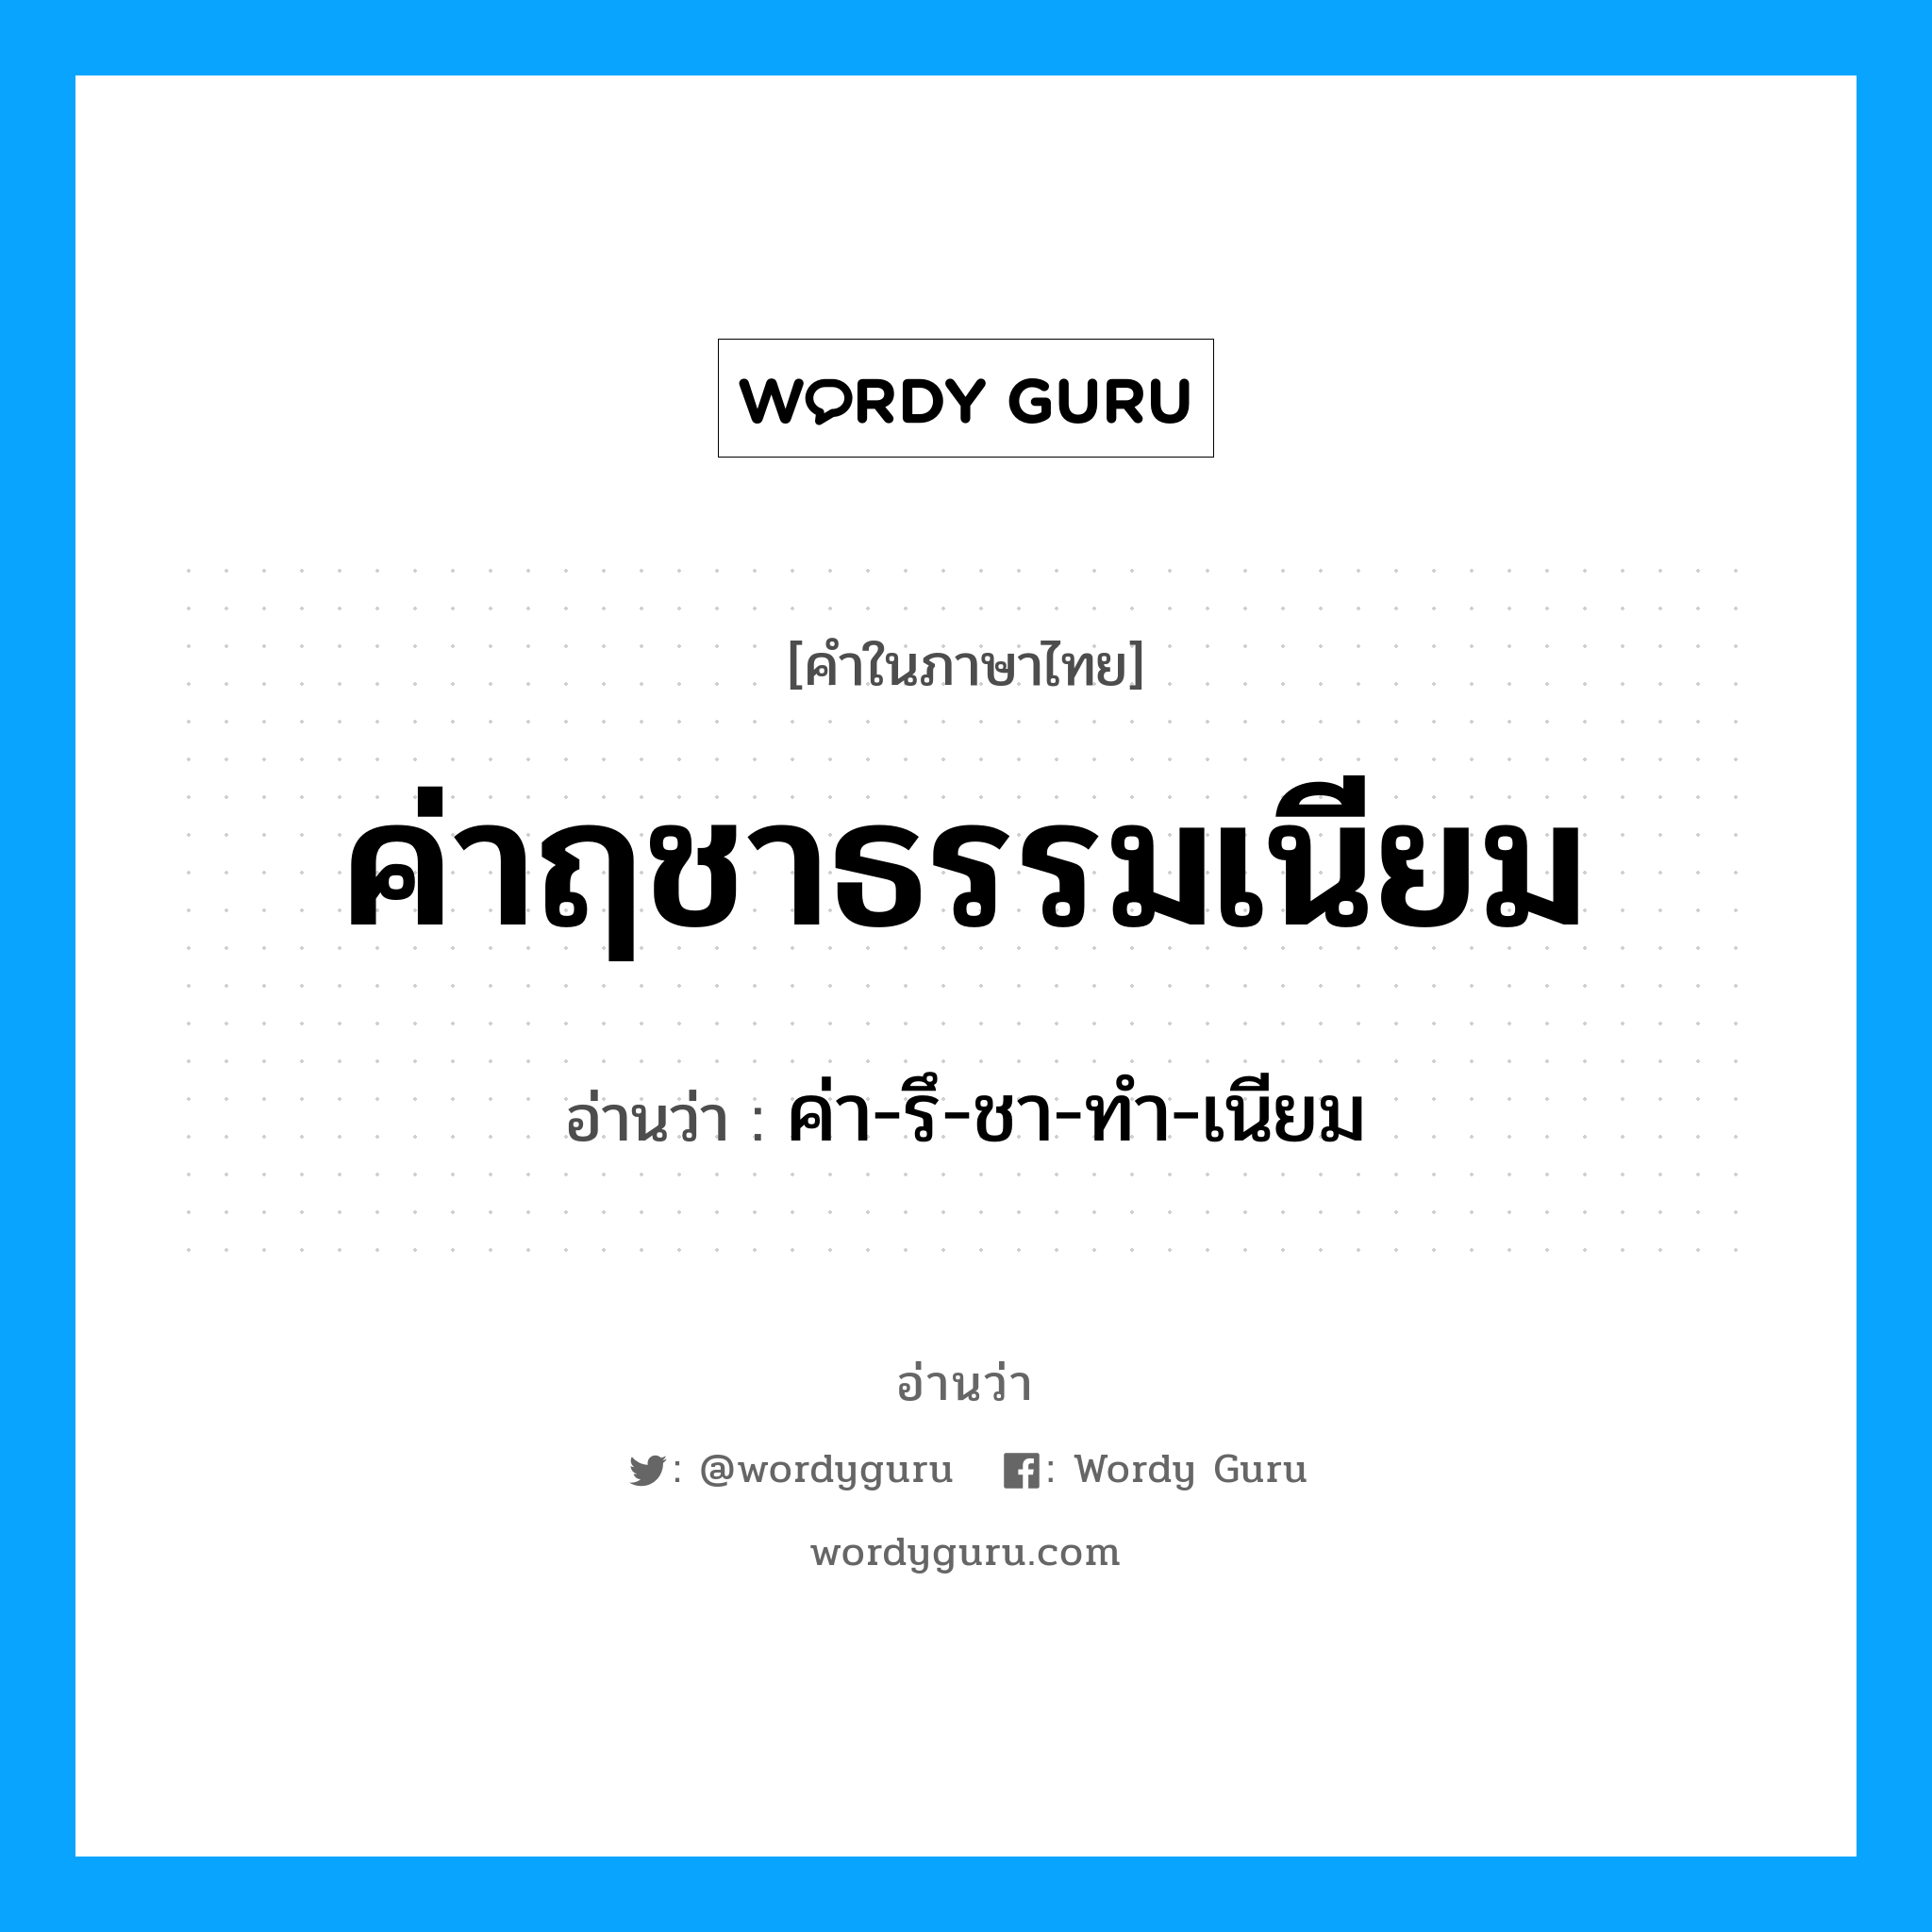 ค่า-รึ-ชา-ทำ-เนียม เป็นคำอ่านของคำไหน?, คำในภาษาไทย ค่า-รึ-ชา-ทำ-เนียม อ่านว่า ค่าฤชาธรรมเนียม